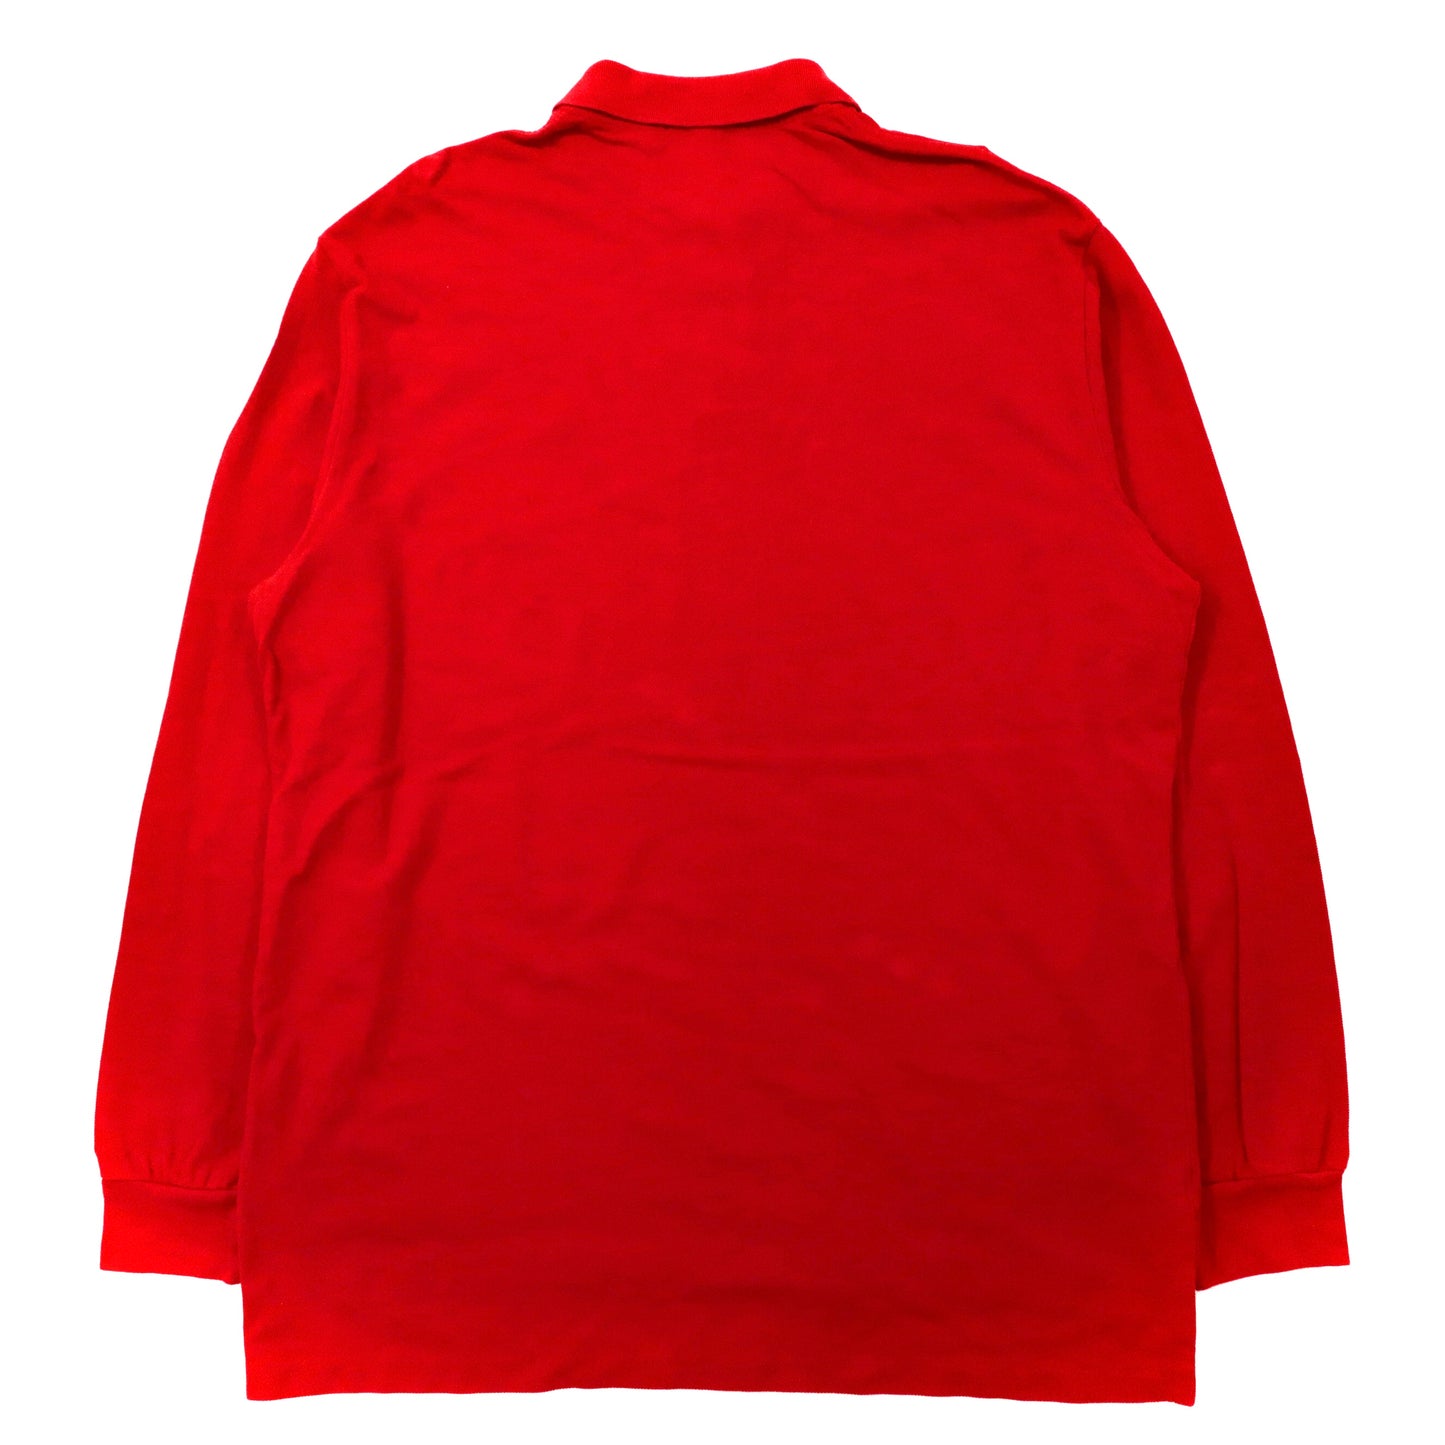 Polo by Ralph Lauren ビッグサイズ 長袖ポロシャツ XL レッド コットン 鹿の子 スモールポニー刺繍